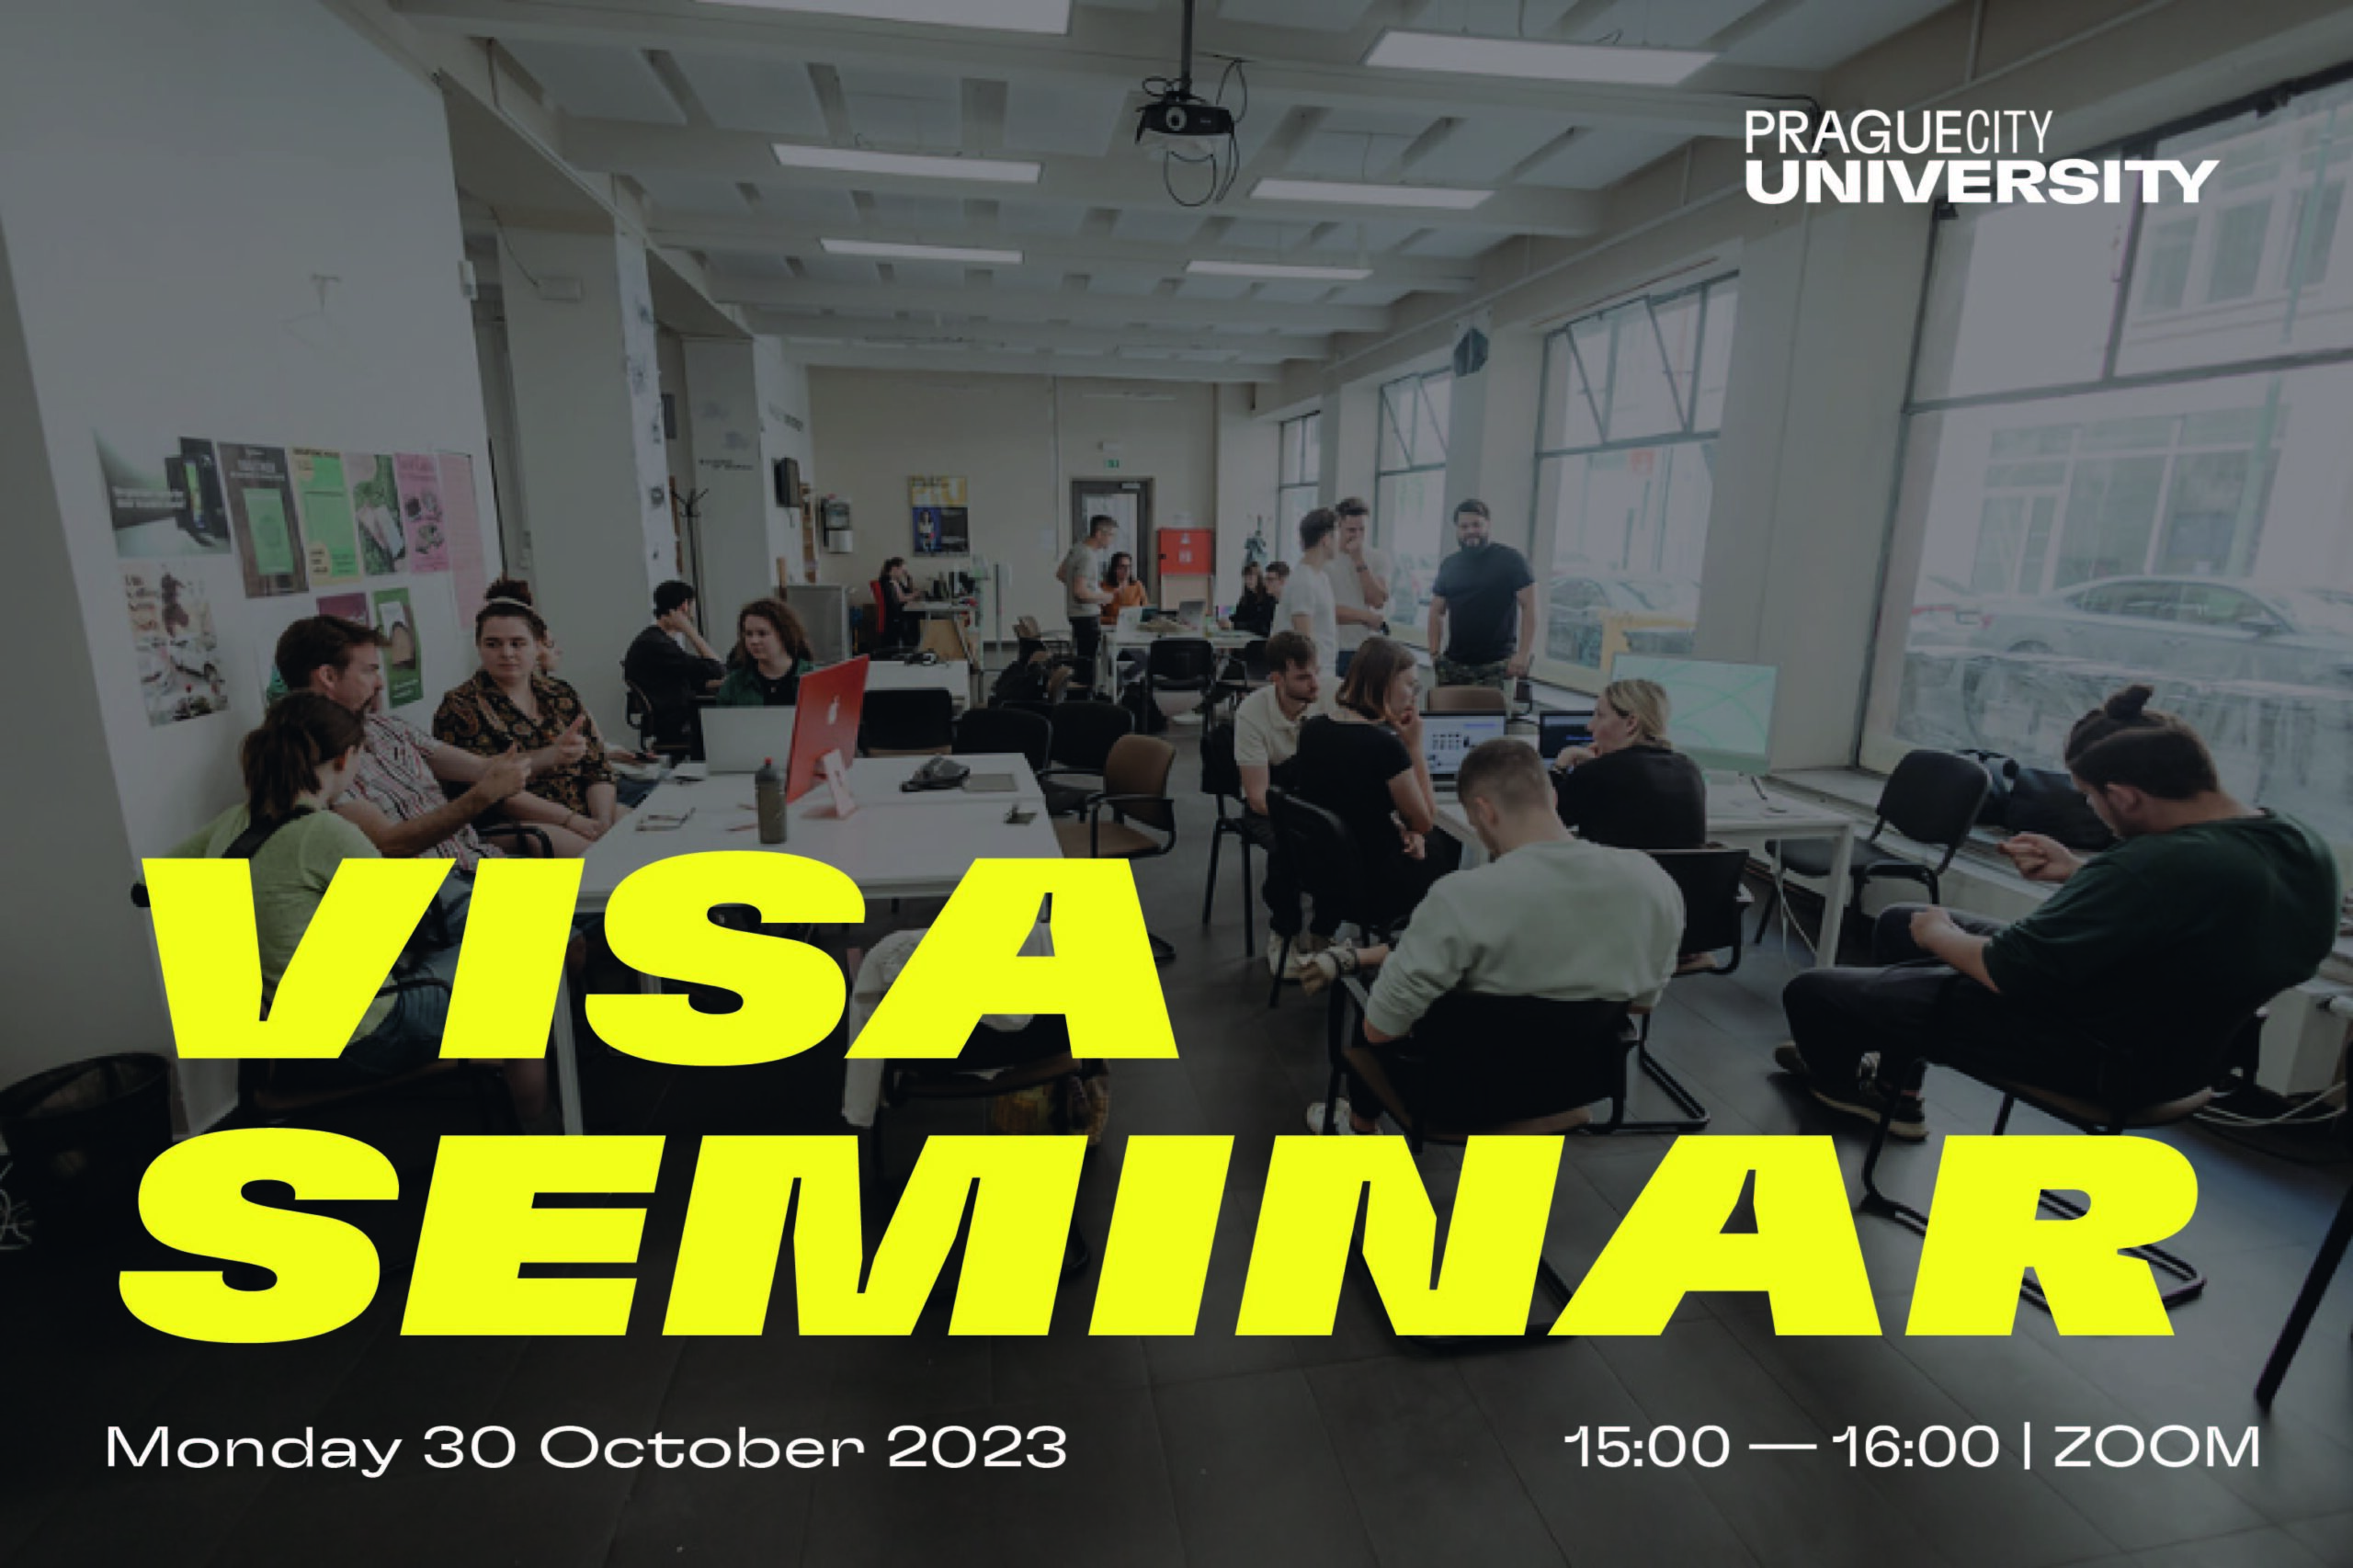 Visa Seminar Prague City University